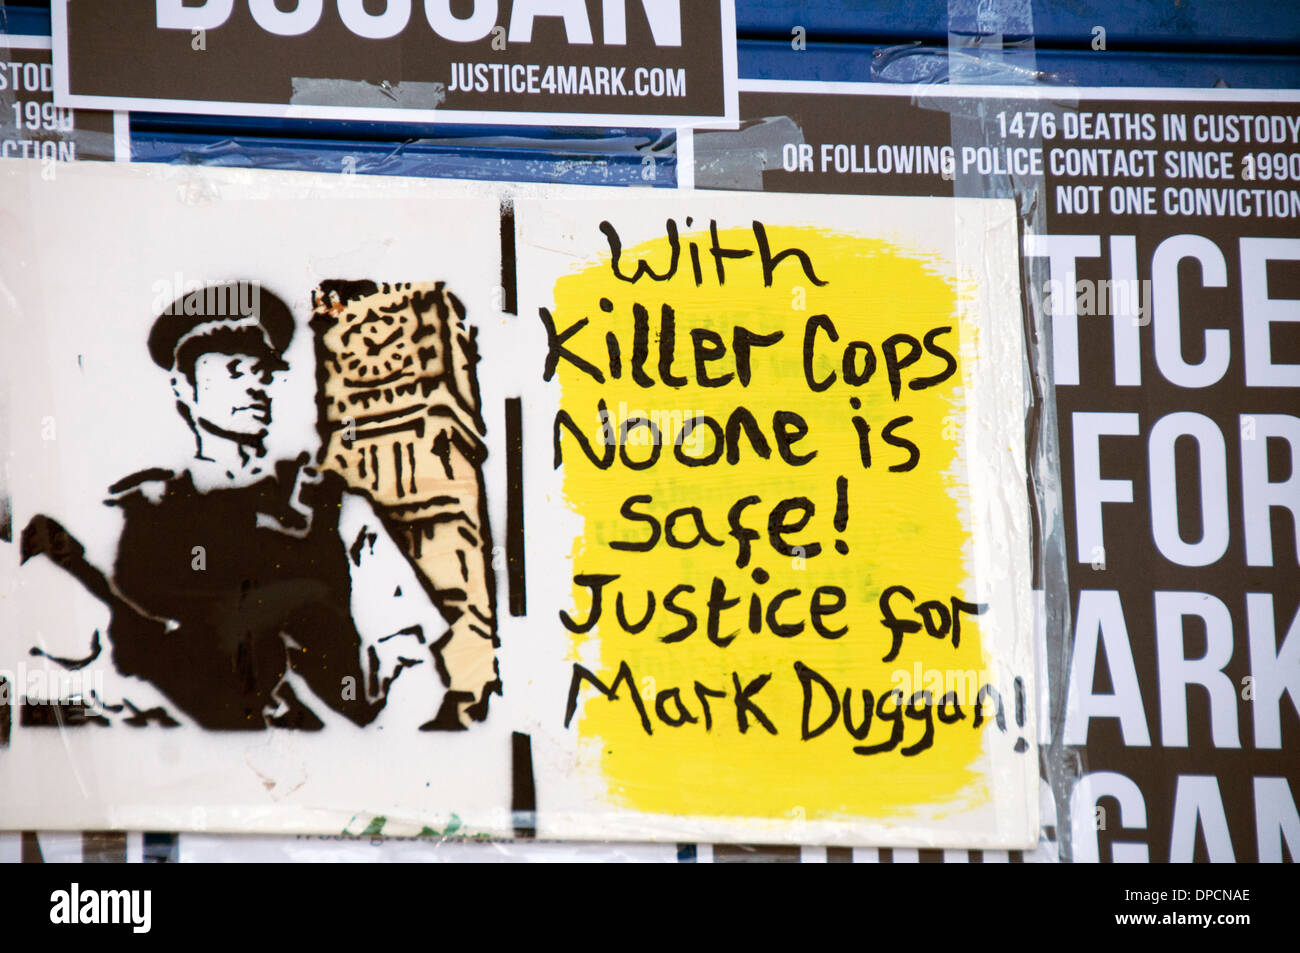 Une veille pour Mark Duggan, tué par un agent de police 2011 enquête suivant jugement du 11 janvier 2014 homicide légal Tottenham Londres Banque D'Images